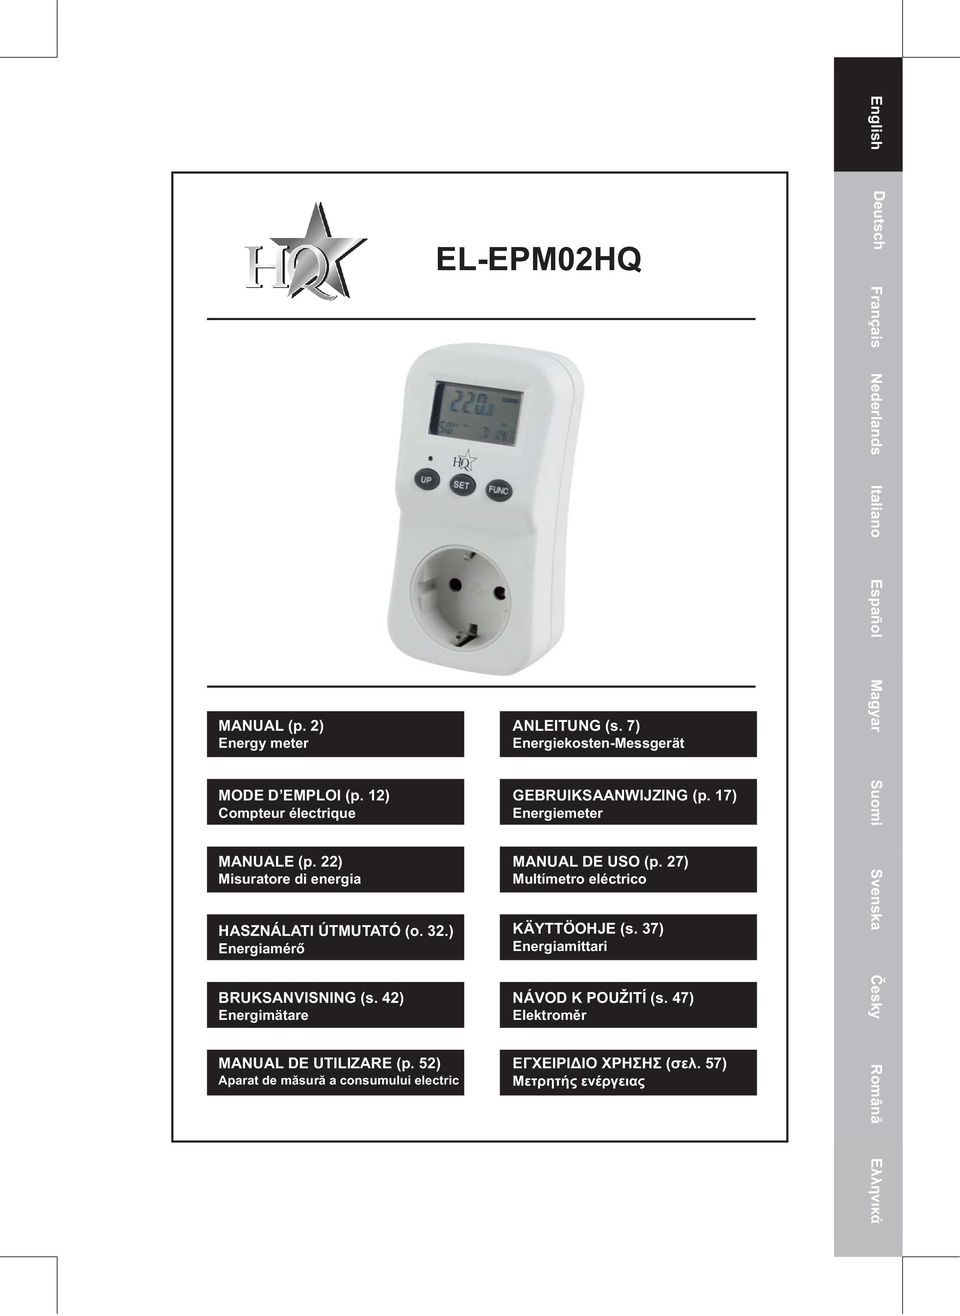 52) Aparat de măsură a consumului electric EL-EPM02HQ 1 ANLEITUNG (s. 7) Energiekosten-Messgerät GEBRUIKSAANWIJZING (p.